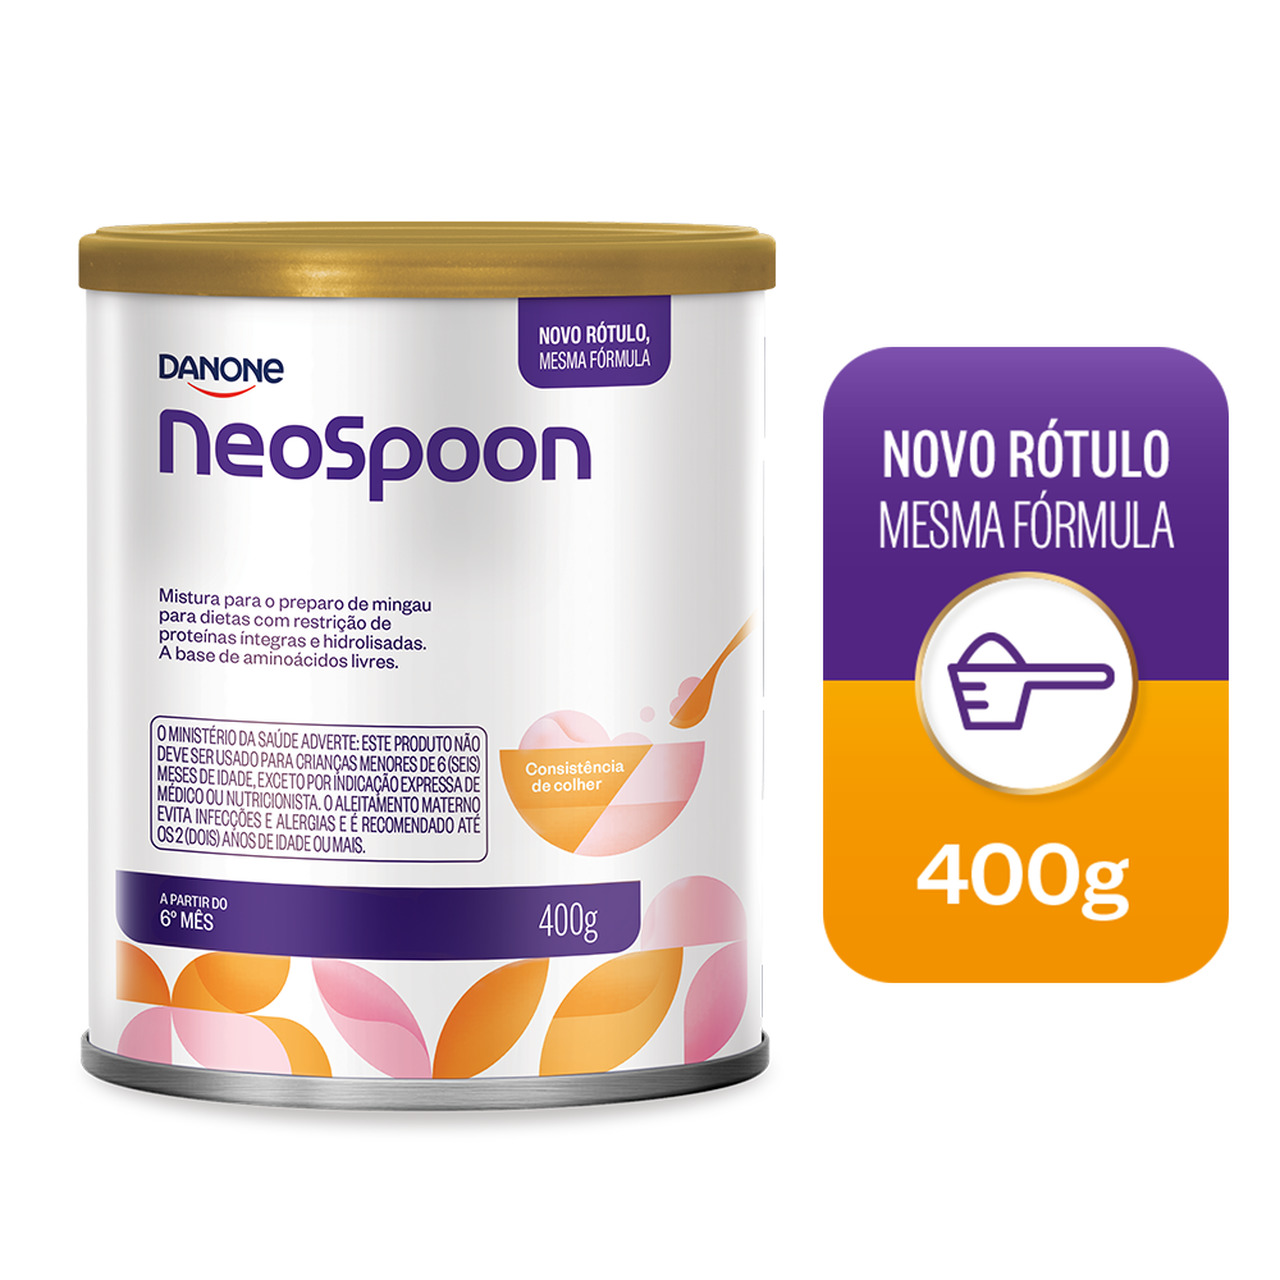 Neo Spoon 400G